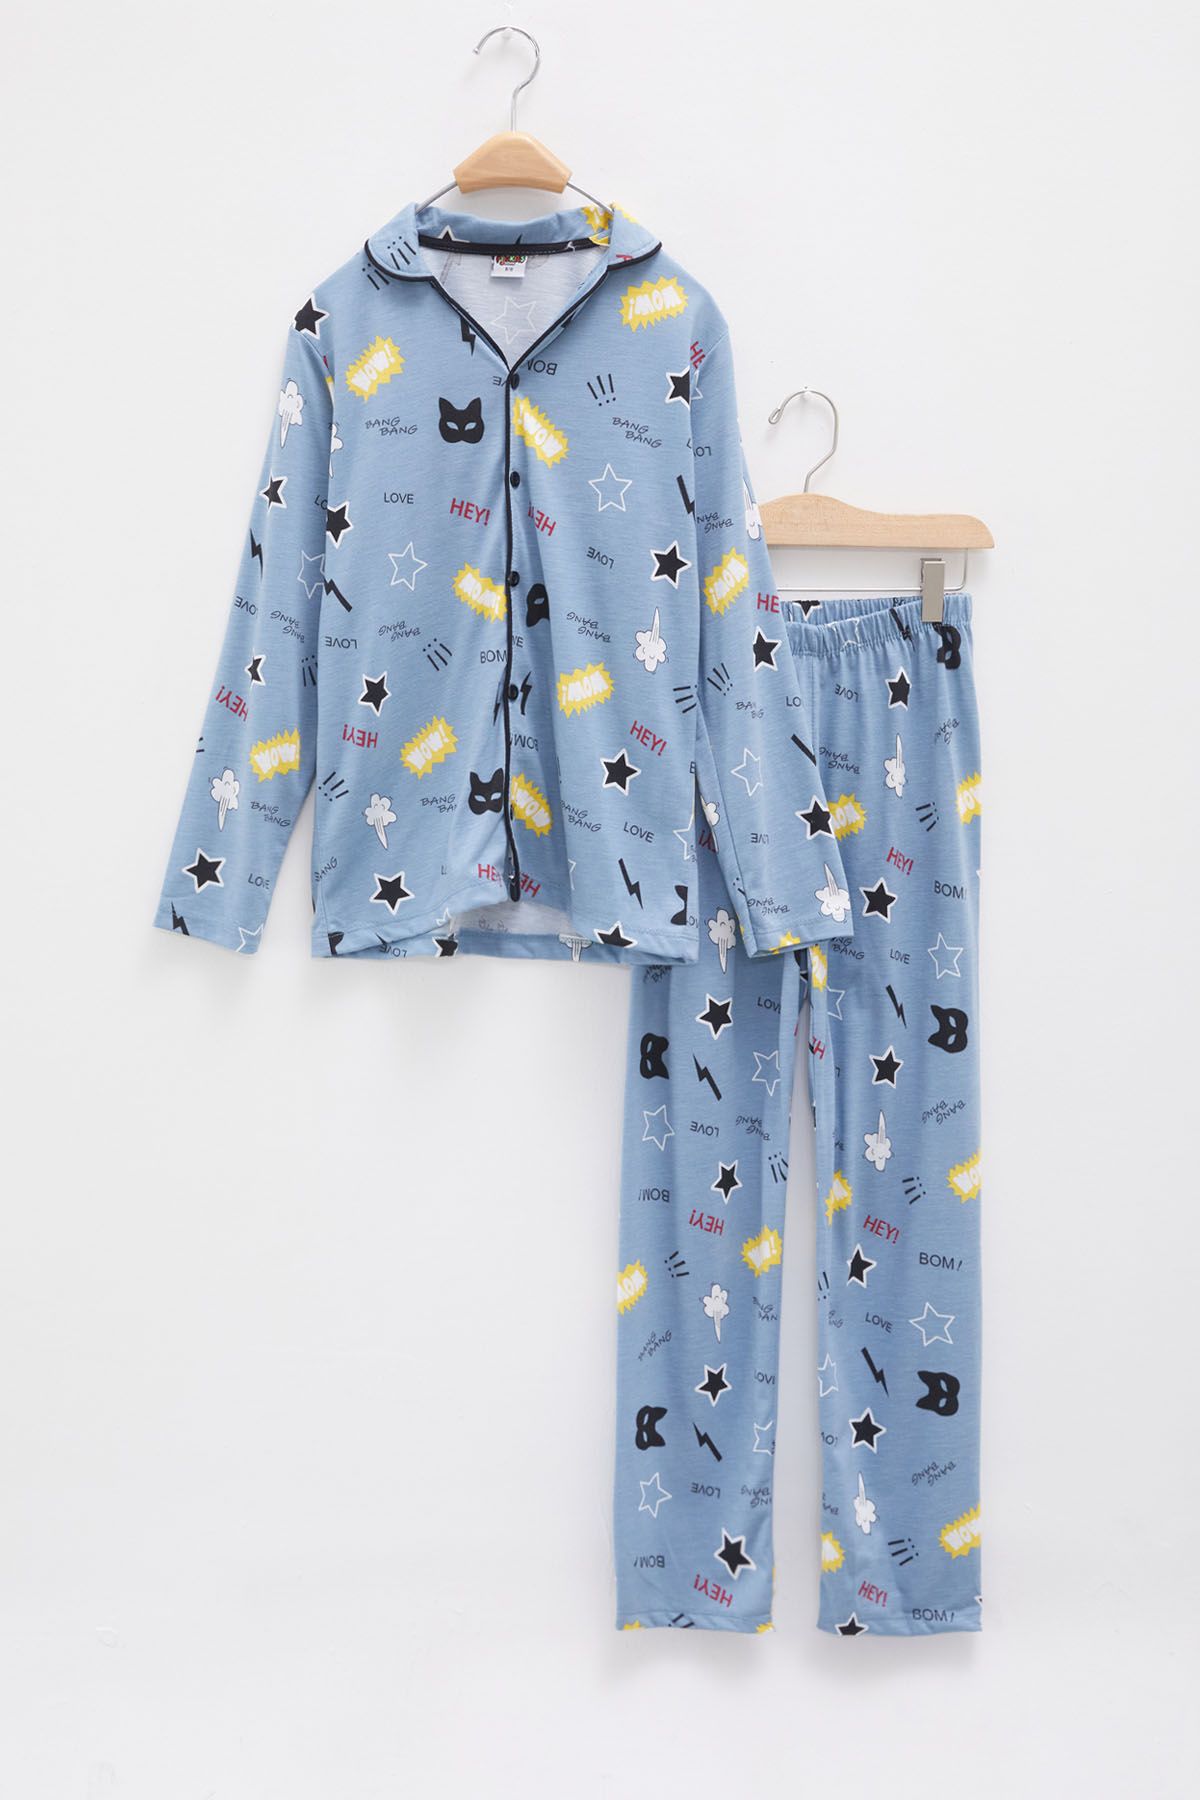 Cansın Mini Mavi Karikatür Baskılı Yazılı Erkek Çocuk Pijama Takımı 18134